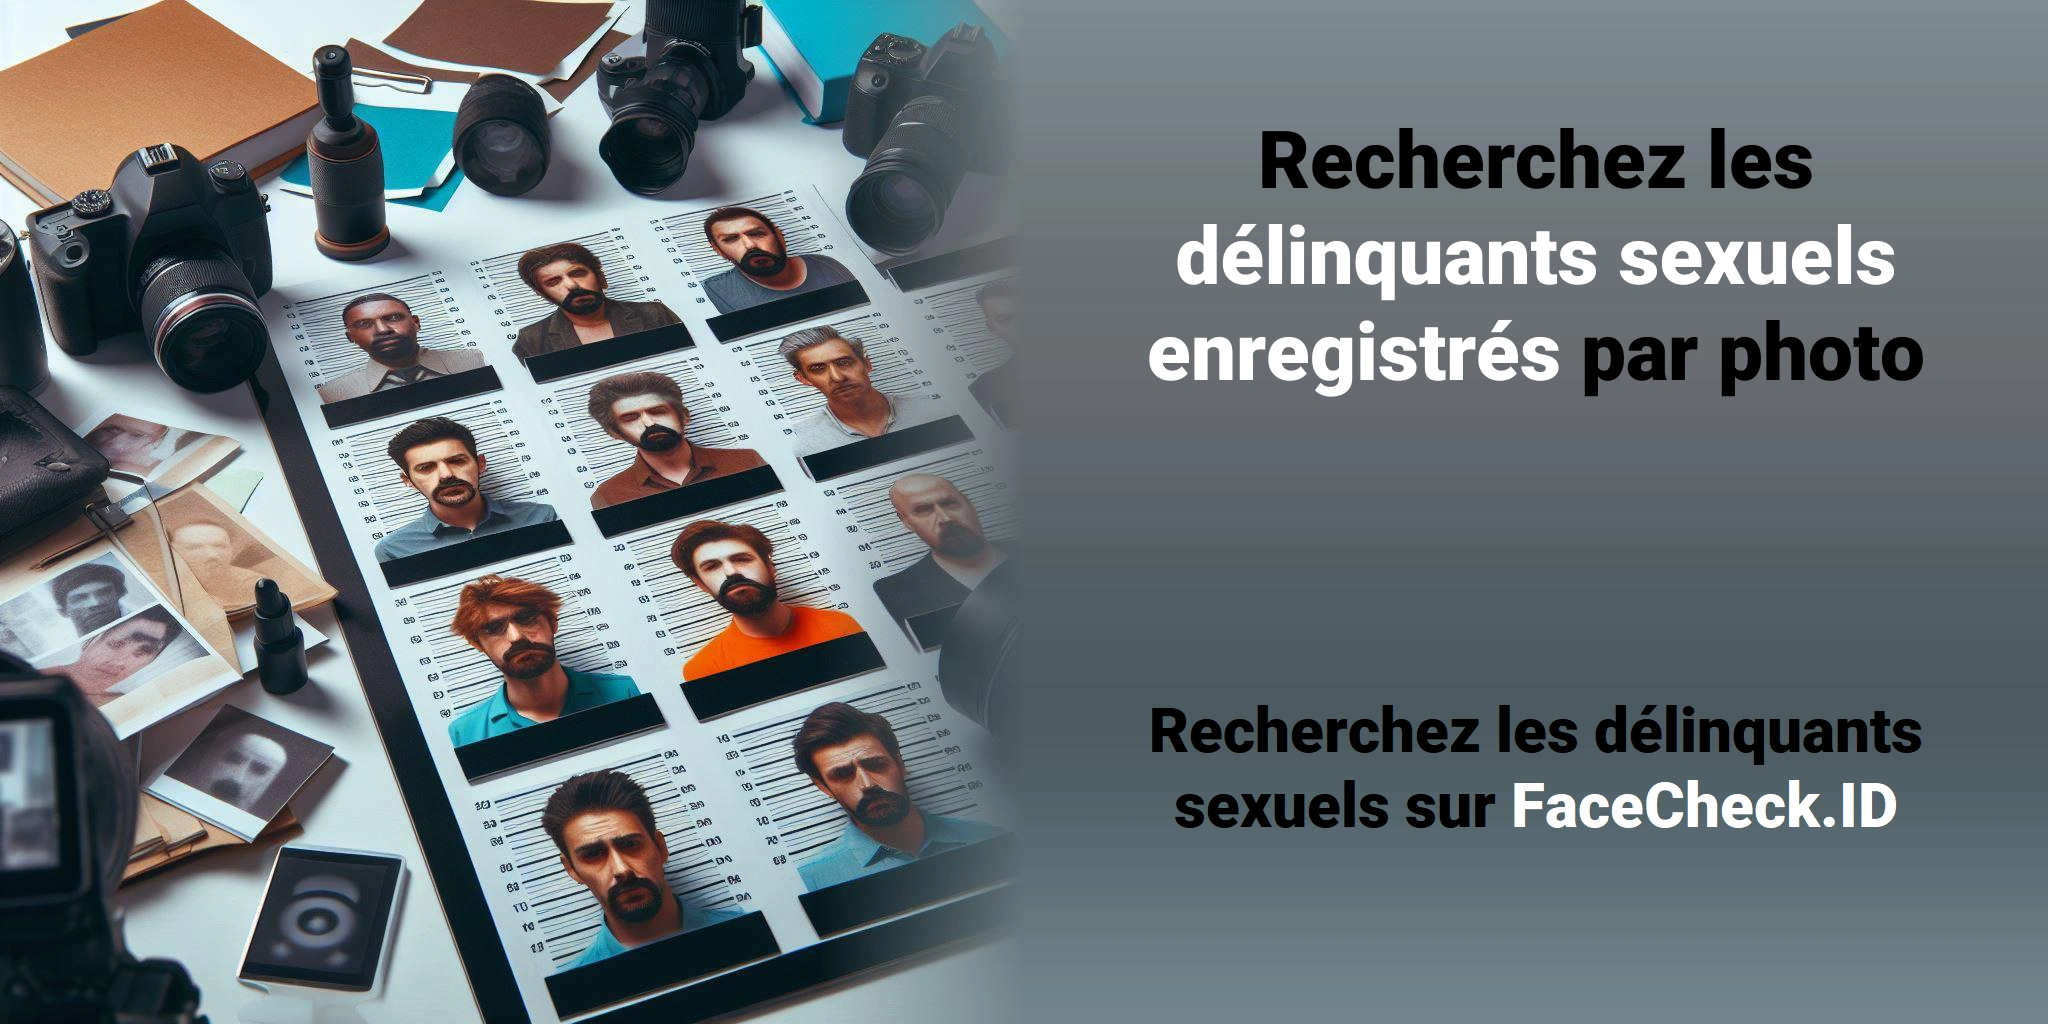 Recherchez les délinquants sexuels enregistrés par photo  Recherchez les délinquants sexuels sur FaceCheck.ID 